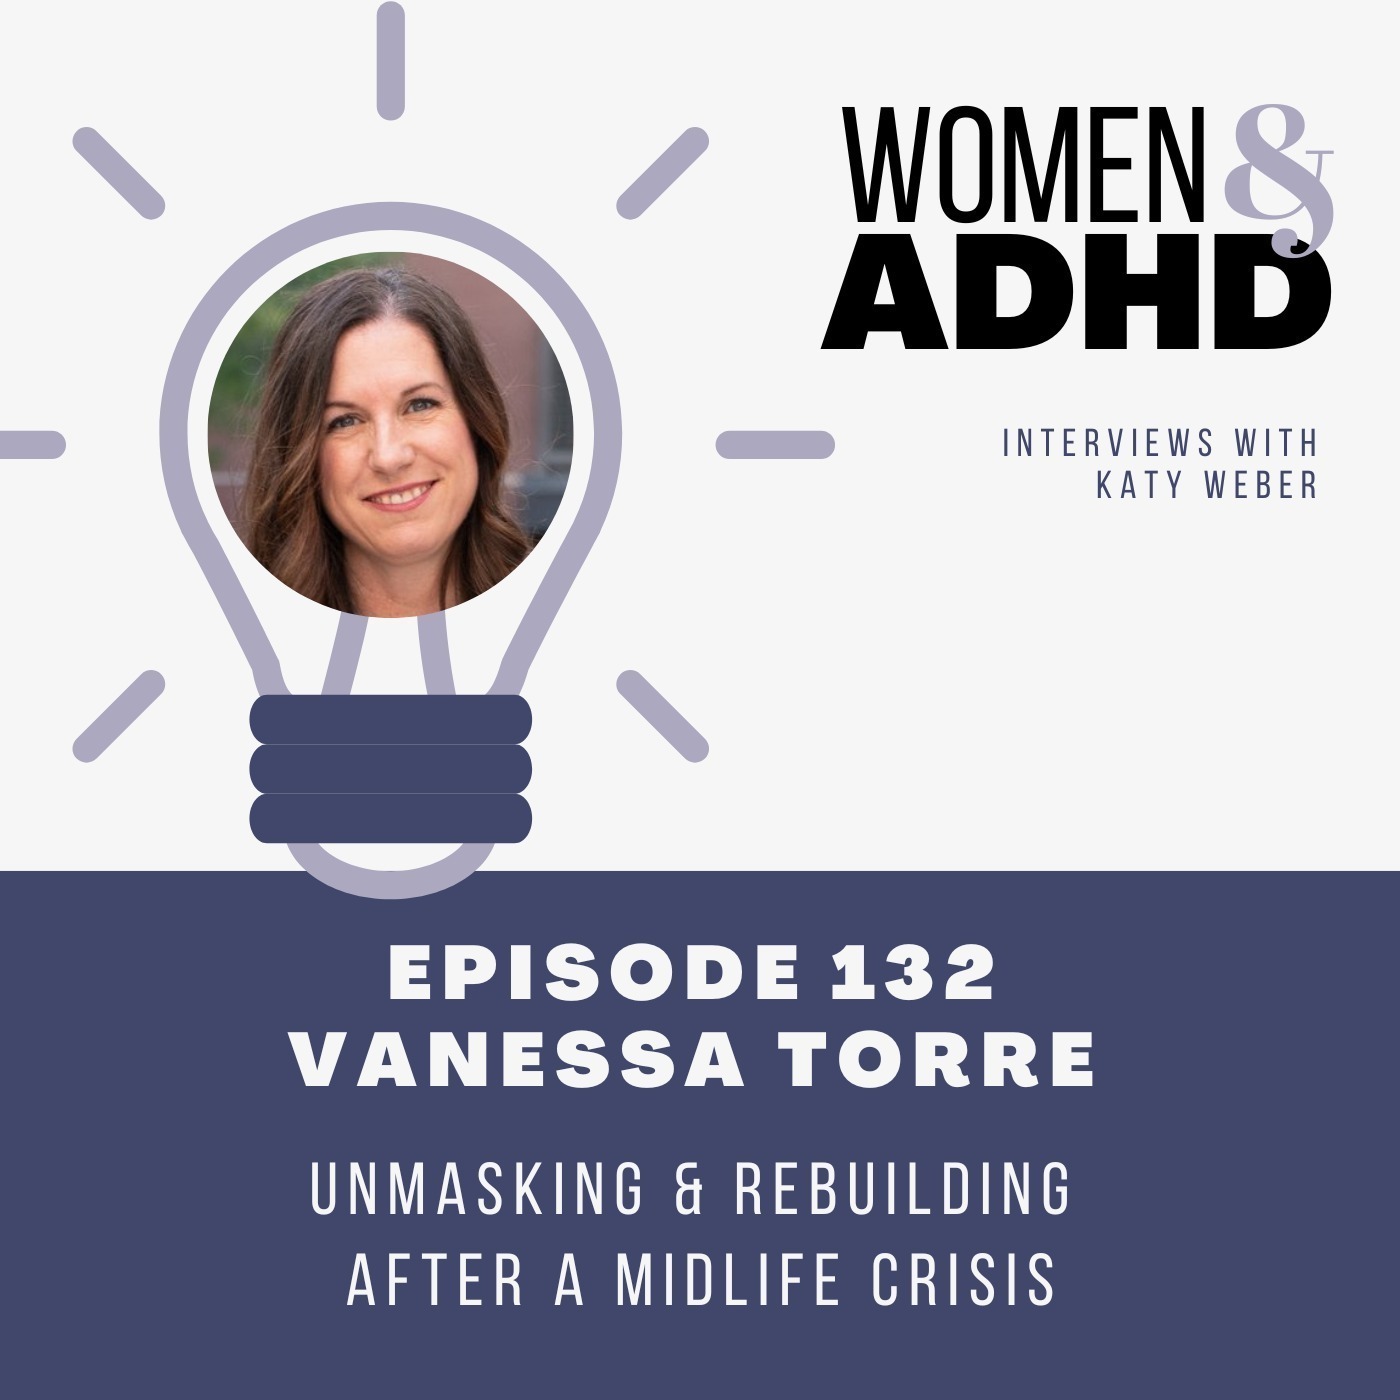 Vanessa Torre: Unmasking & rebuilding after a midlife crisis